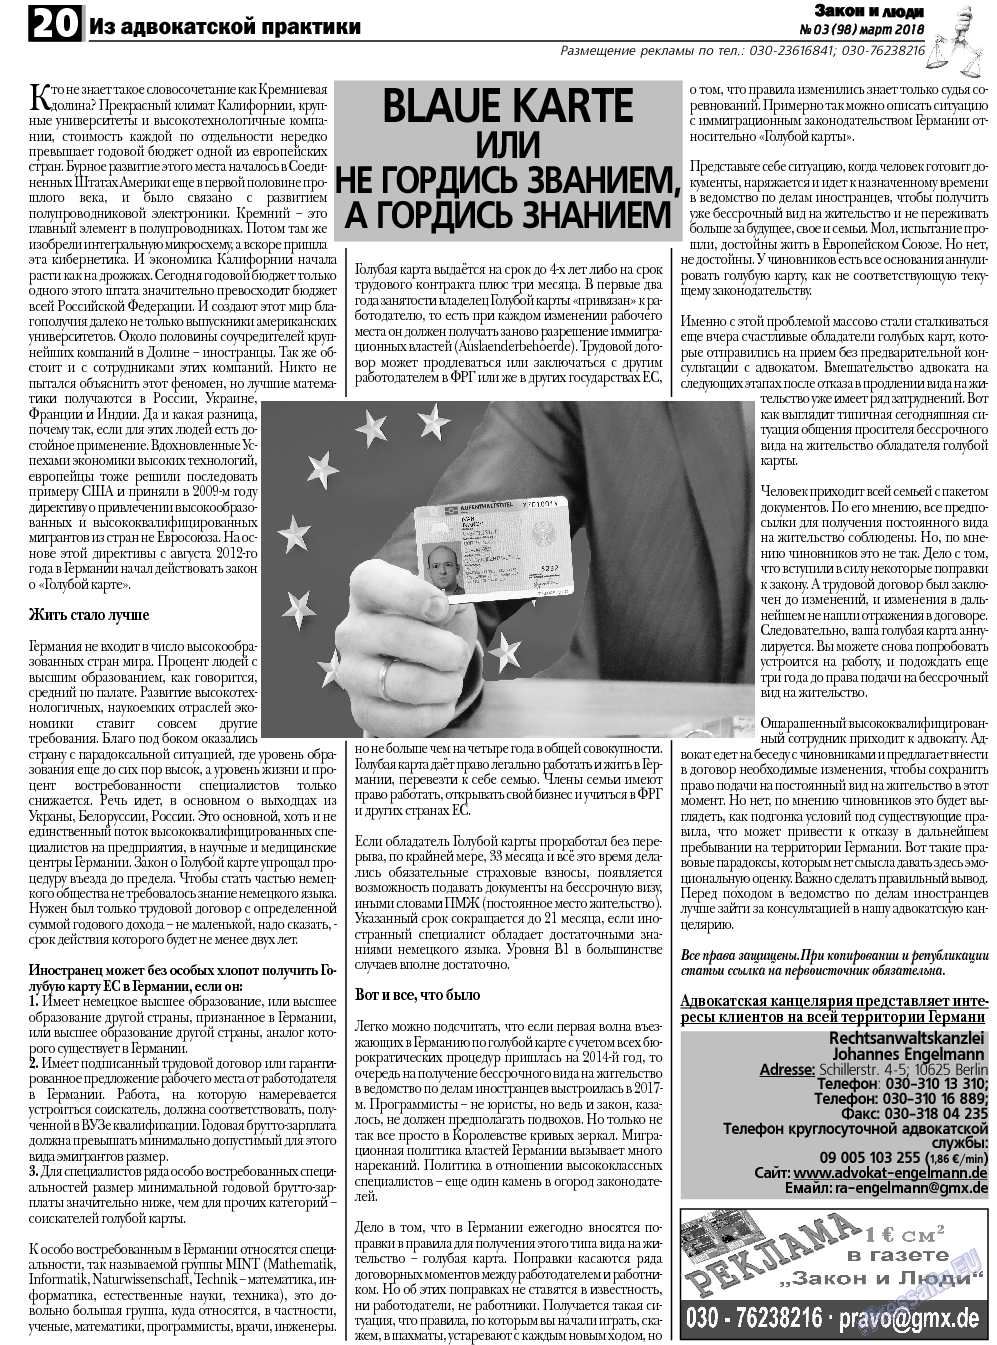 Закон и люди, газета. 2018 №3 стр.20